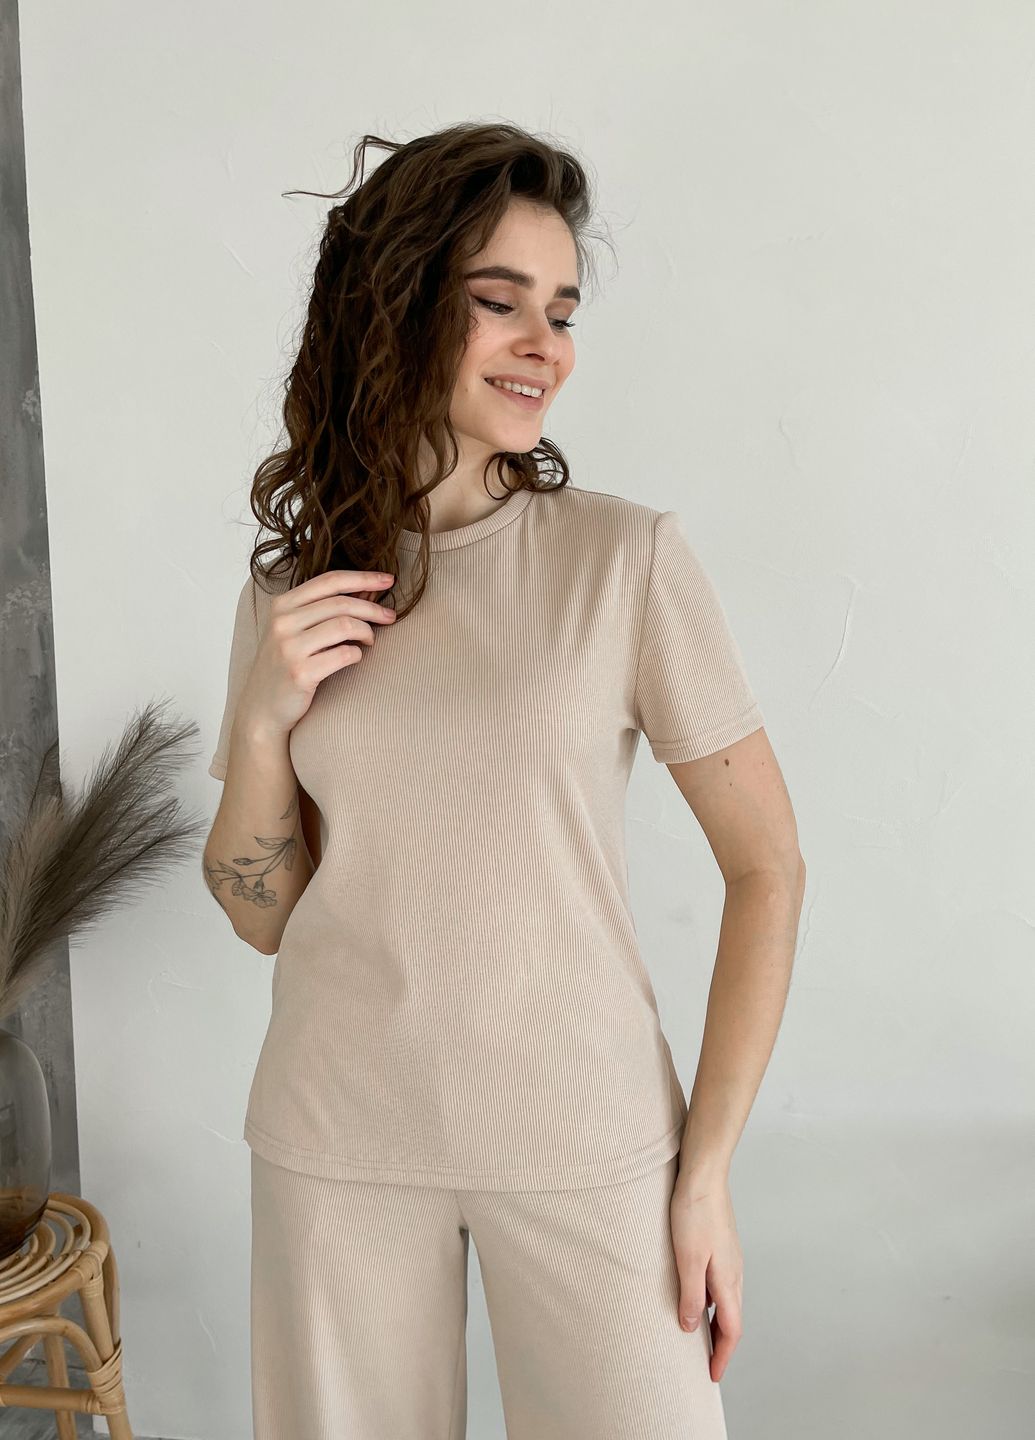 Купить Костюм женский в рубчик футболка со штанами клеш светло-бежевый Merlini Монцано 100000522, размер XS-M (40-44) в интернет-магазине